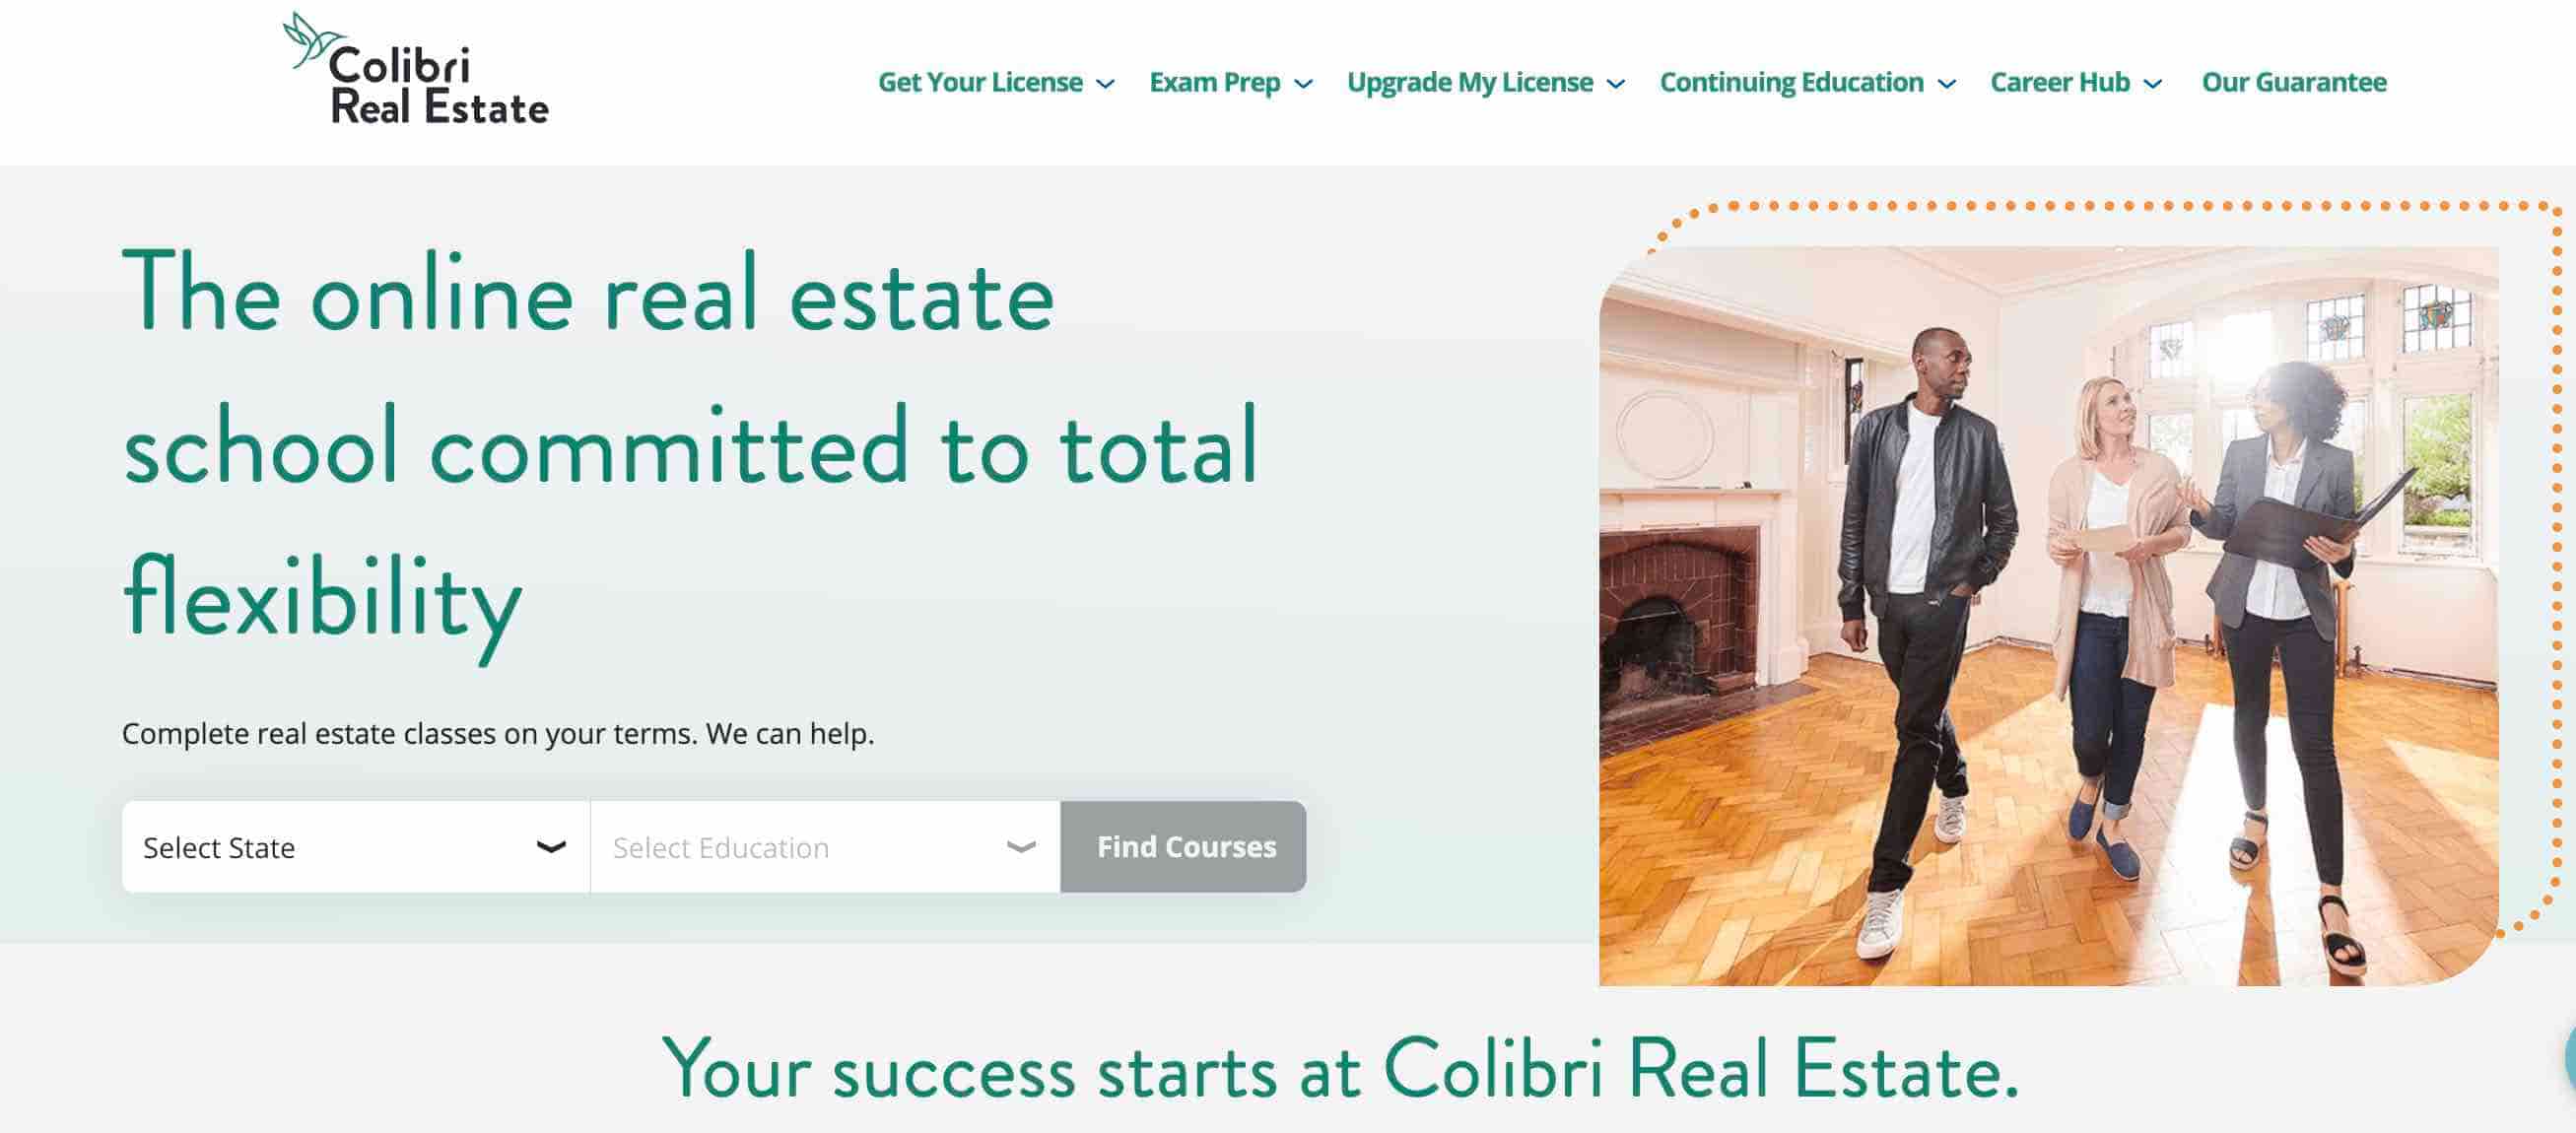 Colibri real estate training course